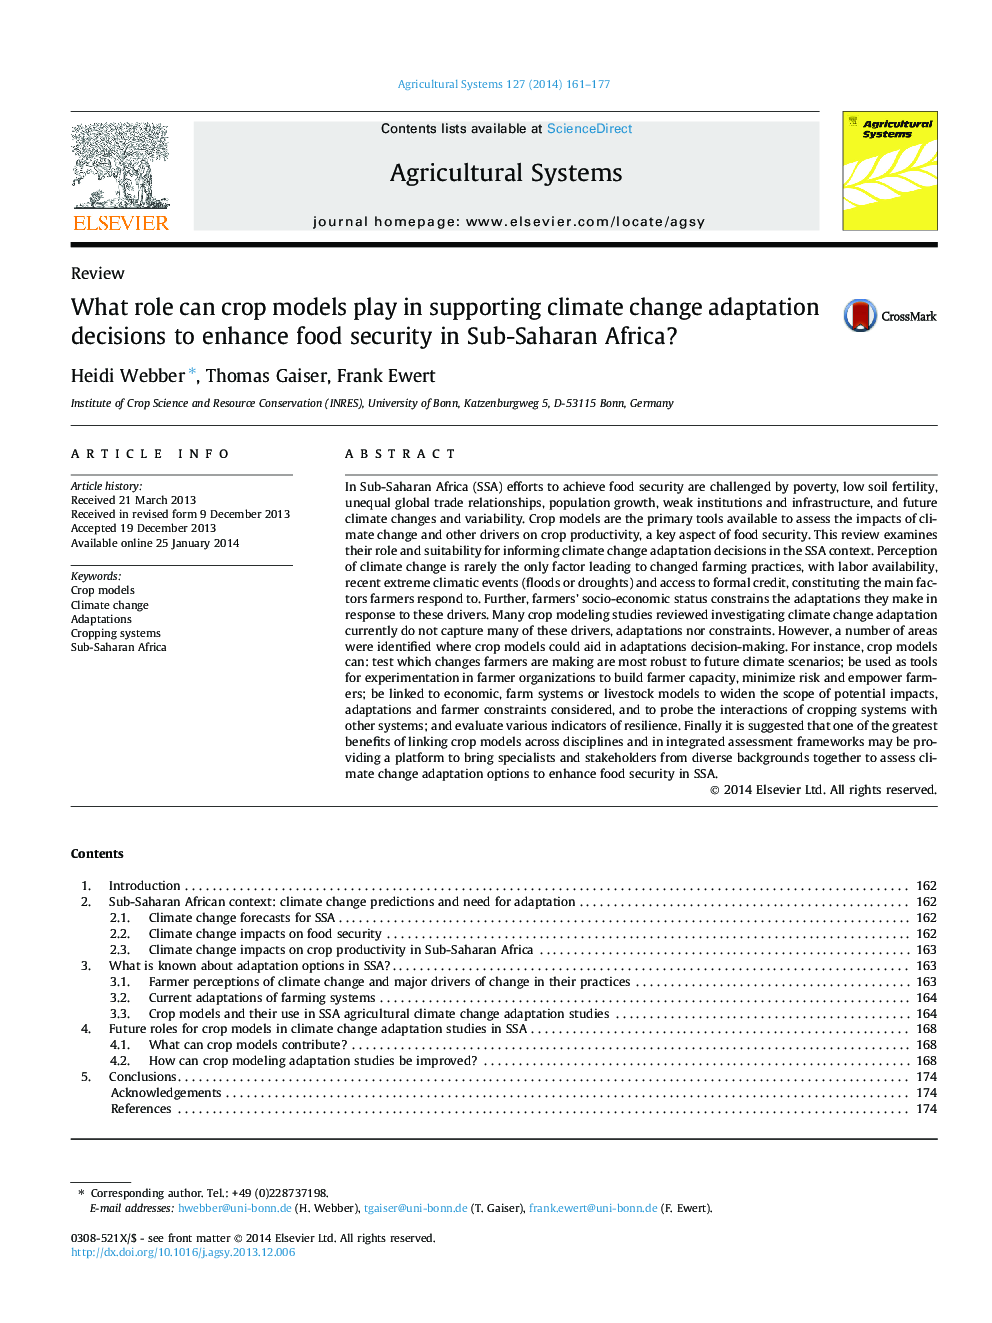 نقش مدل های محصول در حمایت از تصمیمات انطباق تغییرات اقلیمی برای افزایش امنیت غذایی در کشورهای جنوب صحرای آفریقا چیست؟ 